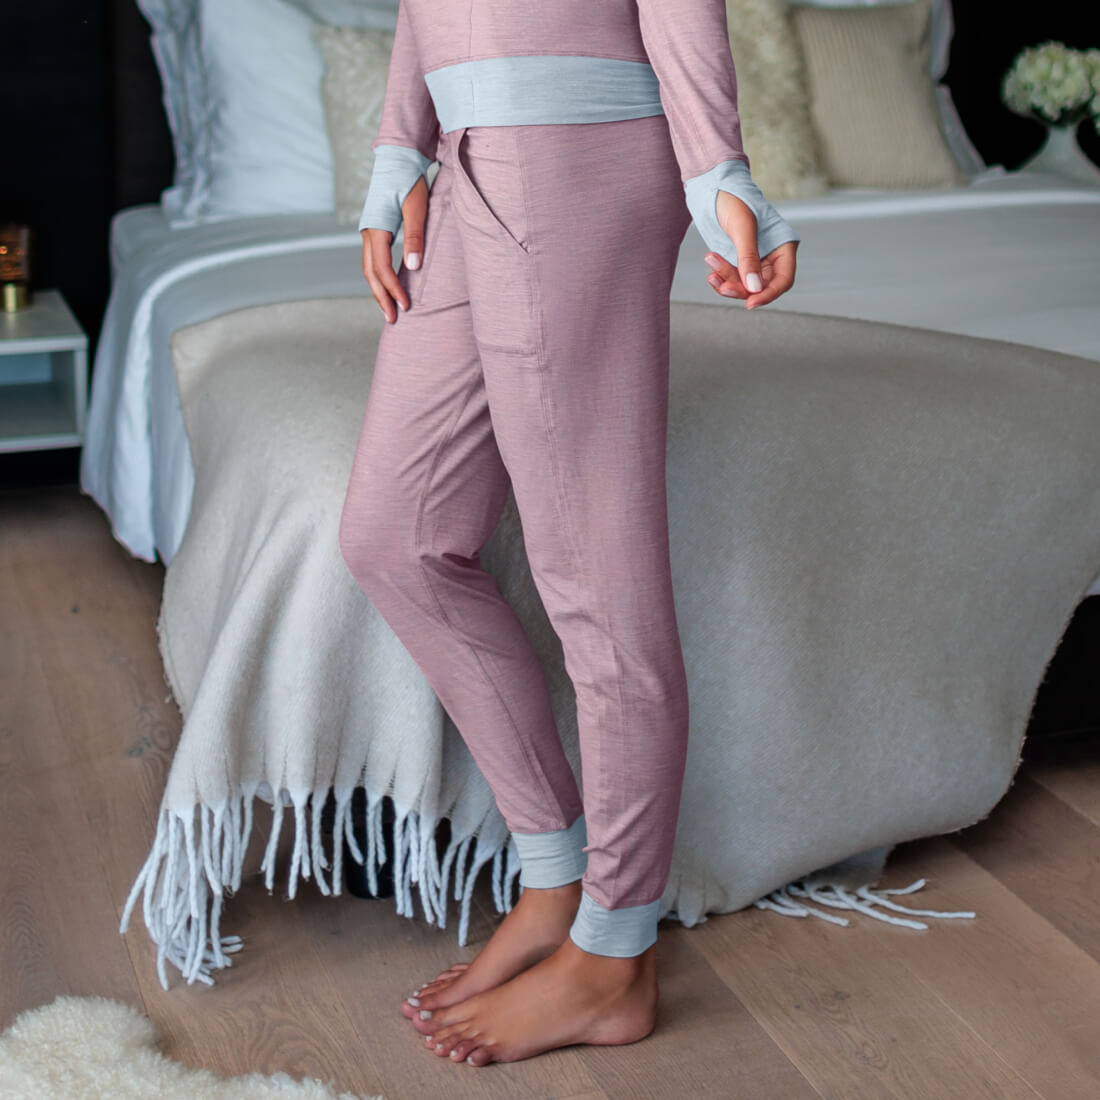 Merino wool pajamas for women